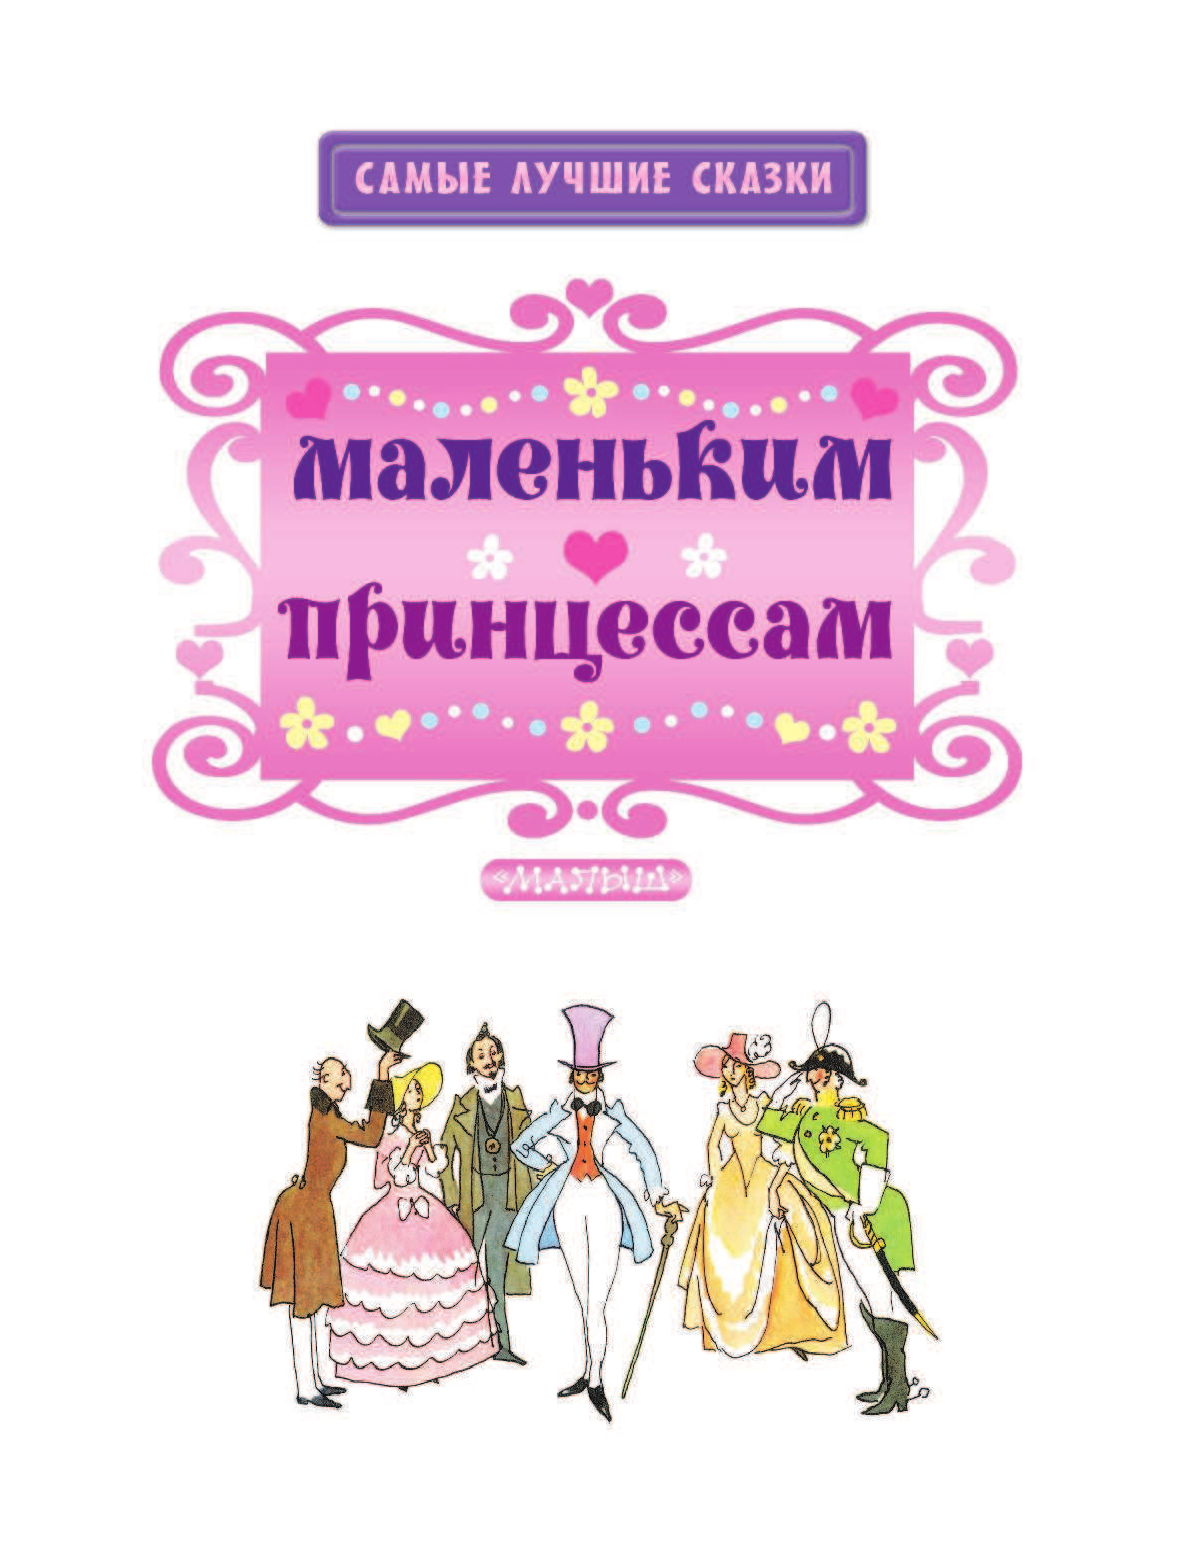 Яхнин Леонид Львович Маленьким принцессам - страница 4